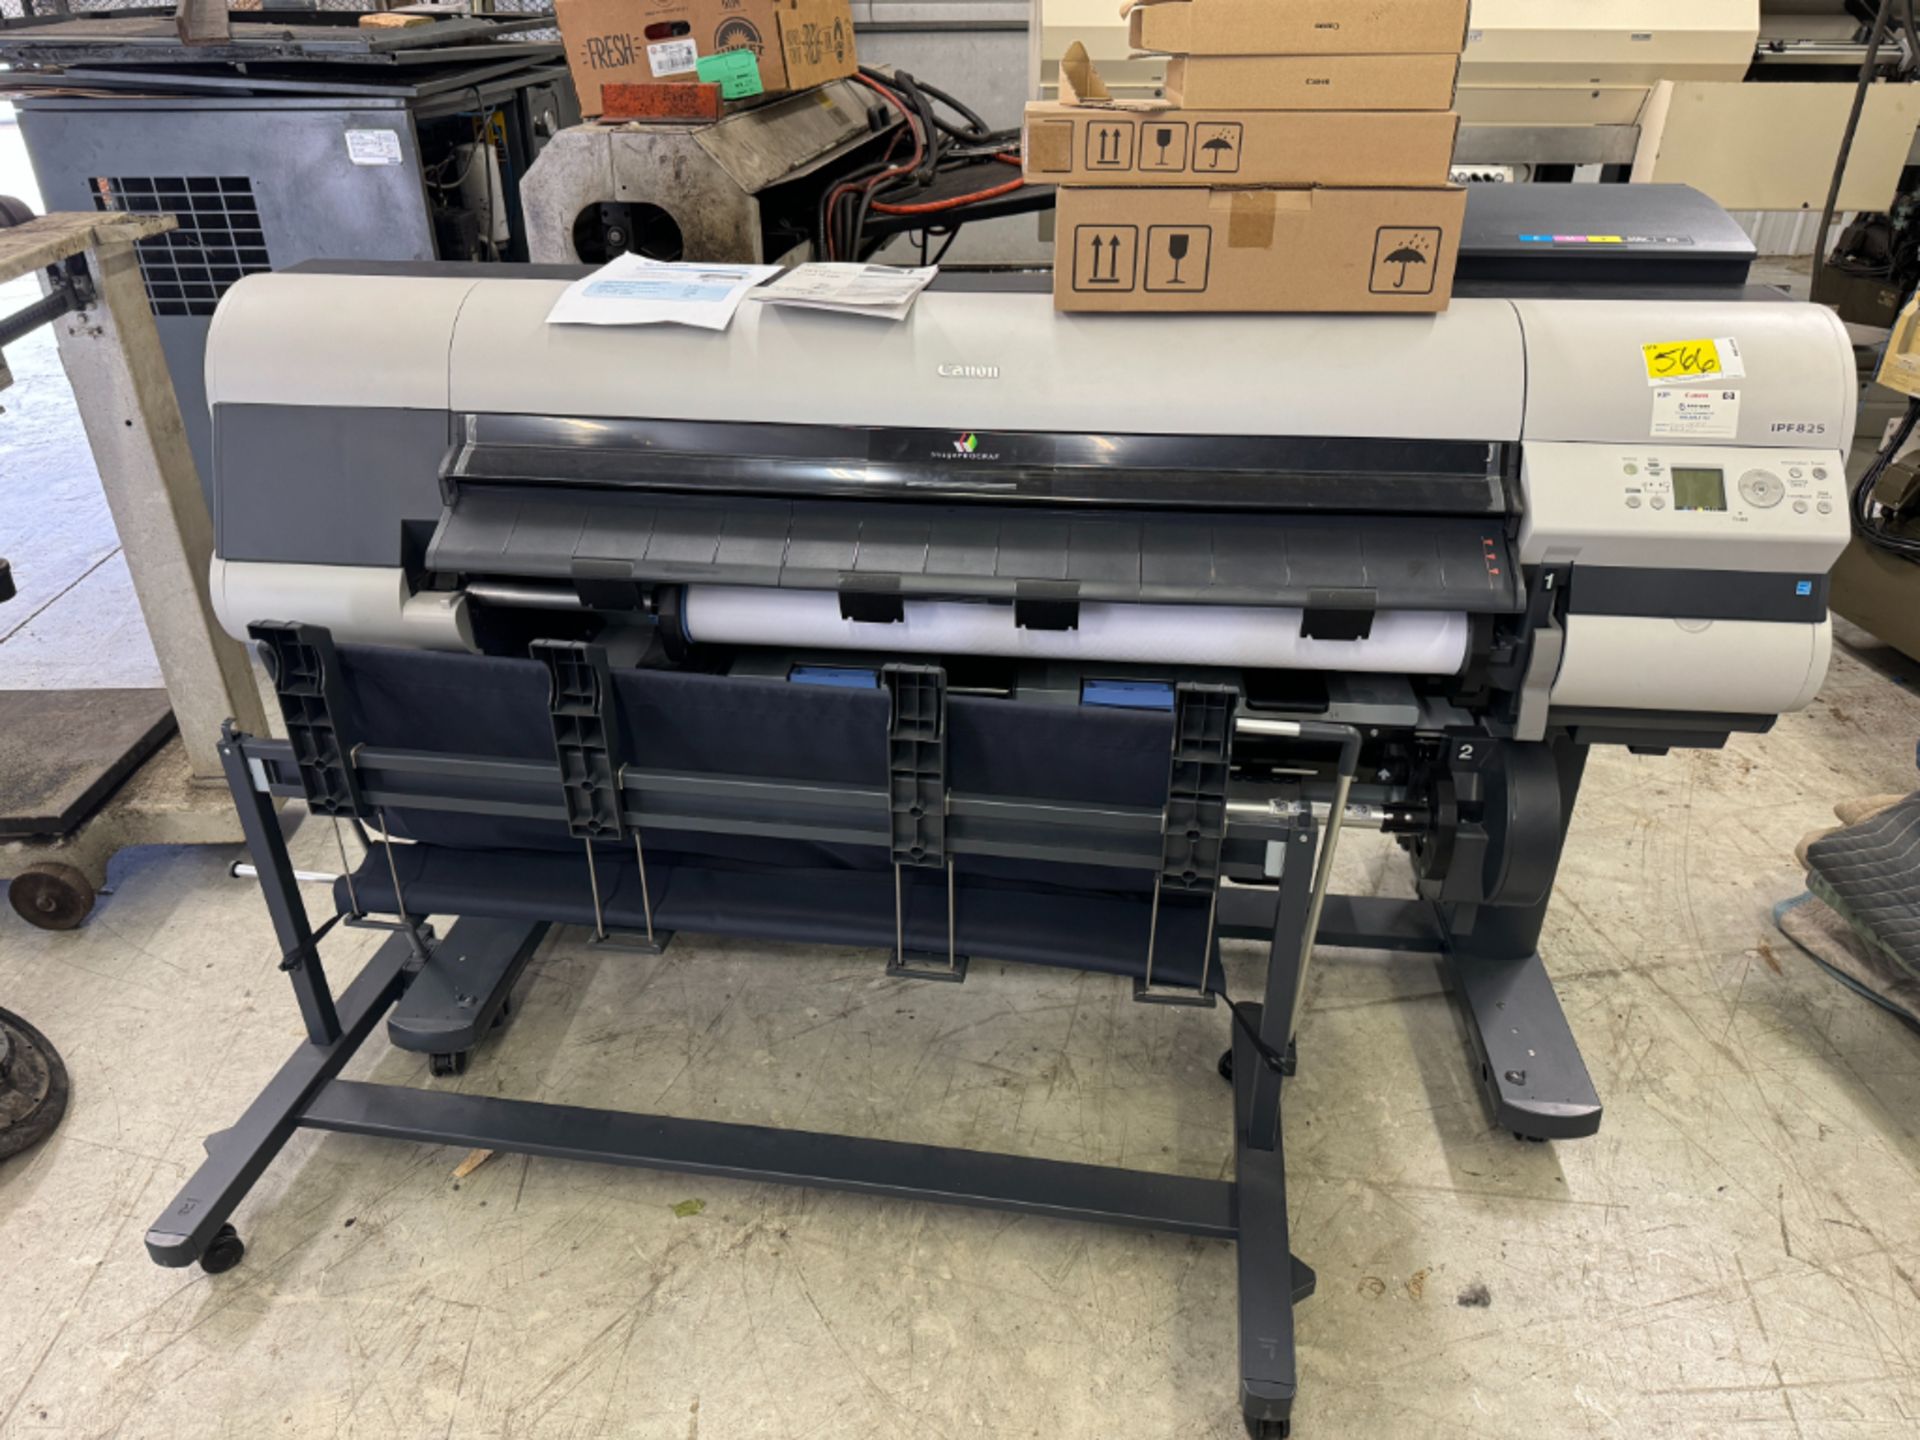 Cannon IPF 825 Printer - Main Board Defective